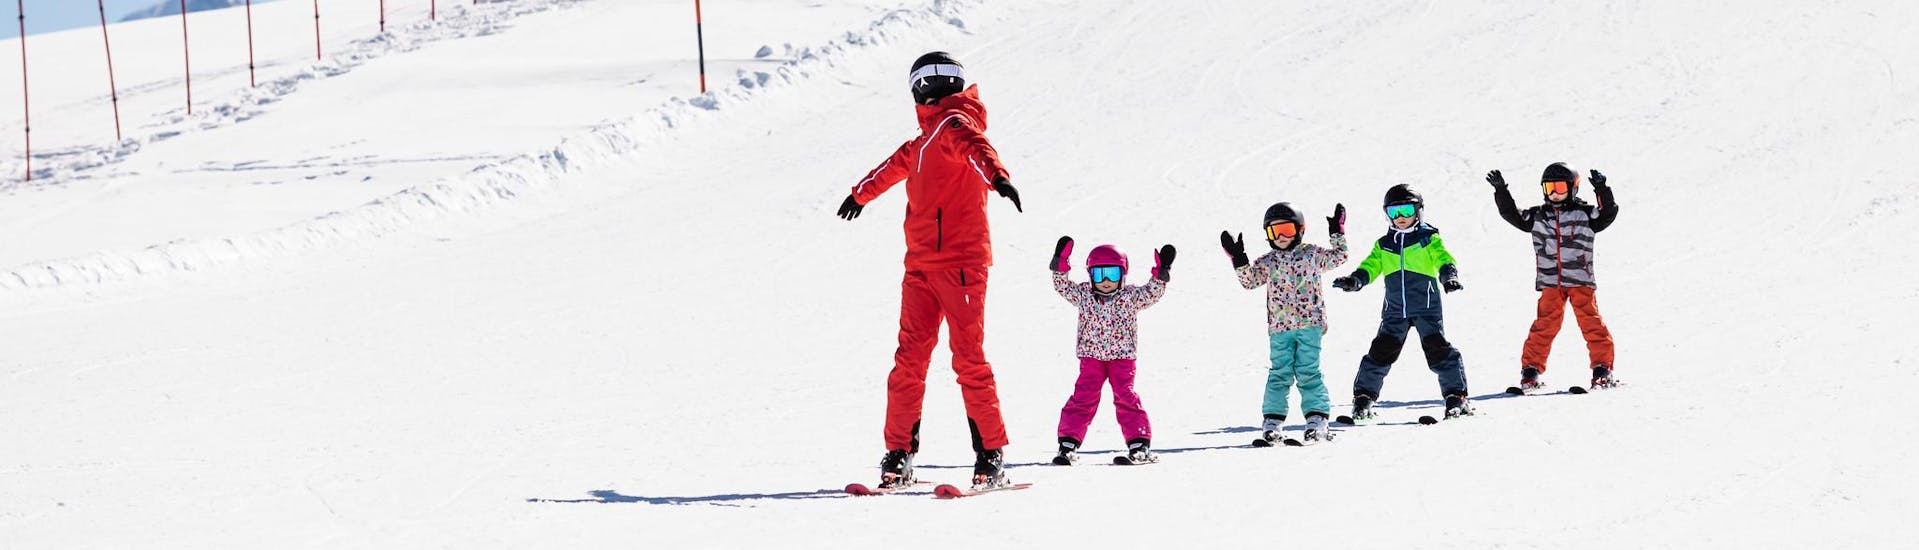 Moniteur de ski et enfants profitent d'une leçon de ski dans une école de ski près d'Aachen.